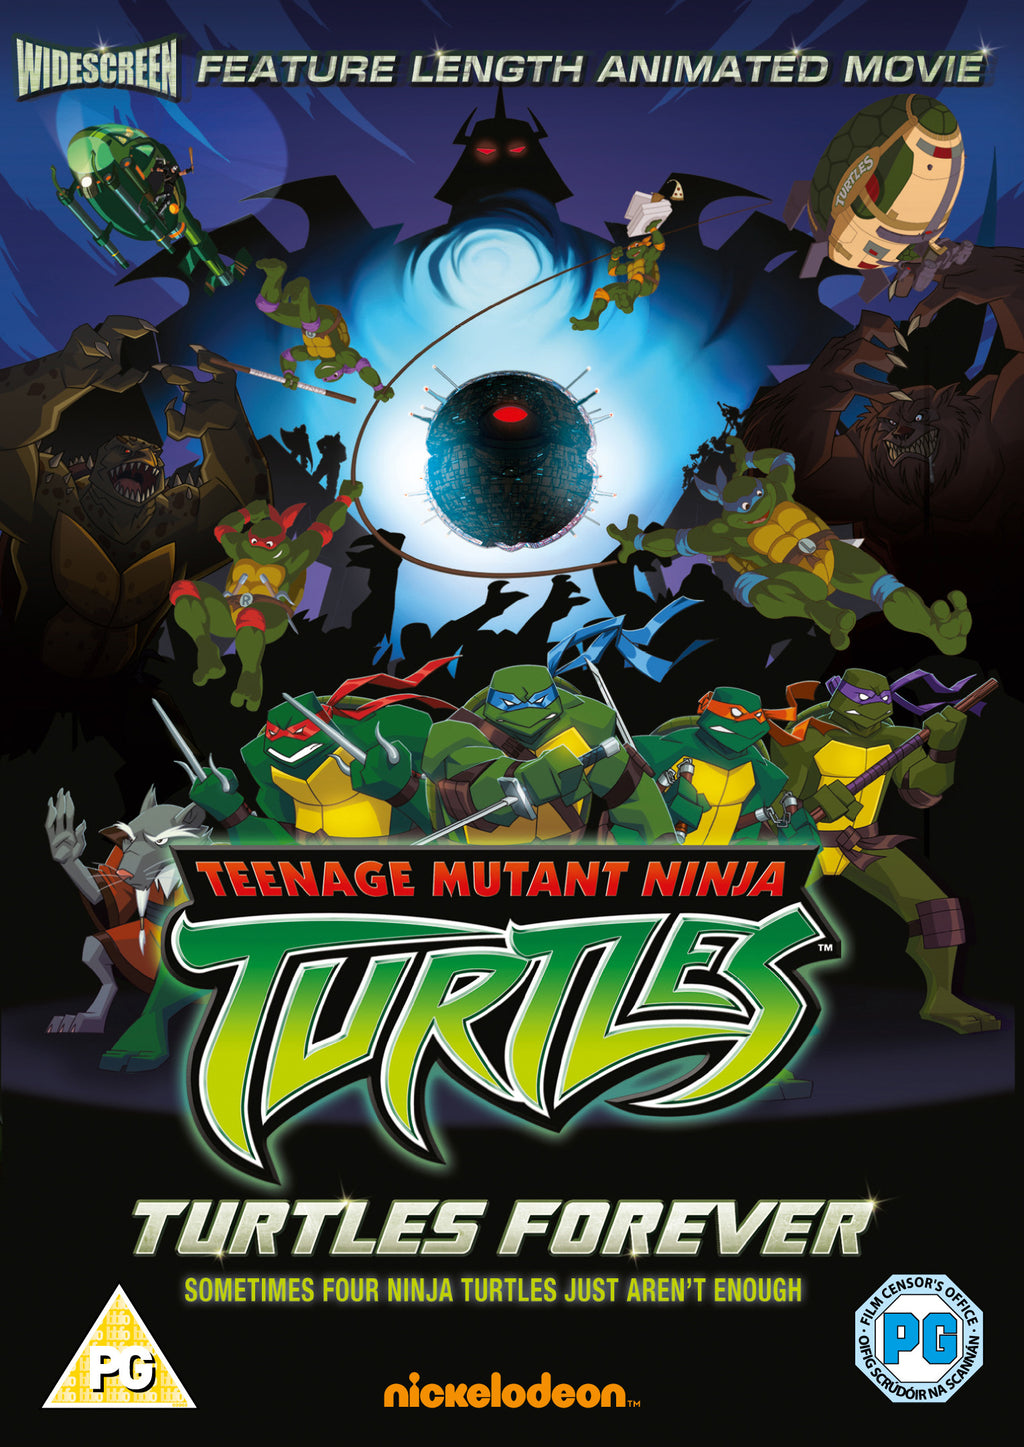 Teenage Mutant Ninja Turtles Forever (DVD) (2009)